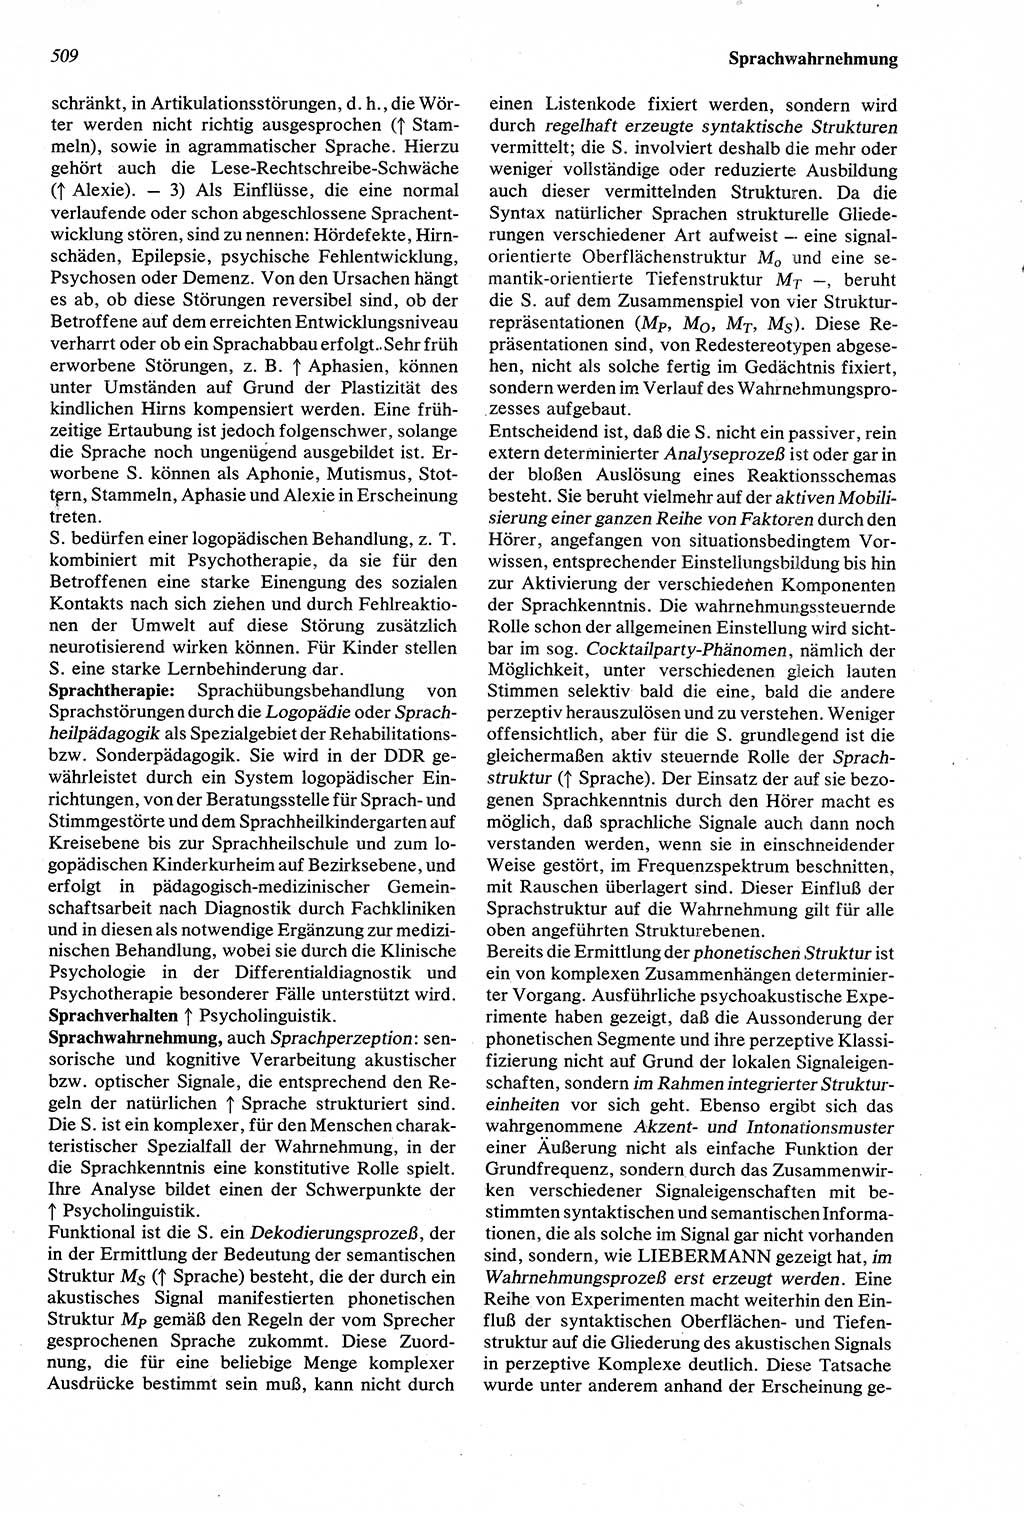 Wörterbuch der Psychologie [Deutsche Demokratische Republik (DDR)] 1976, Seite 509 (Wb. Psych. DDR 1976, S. 509)